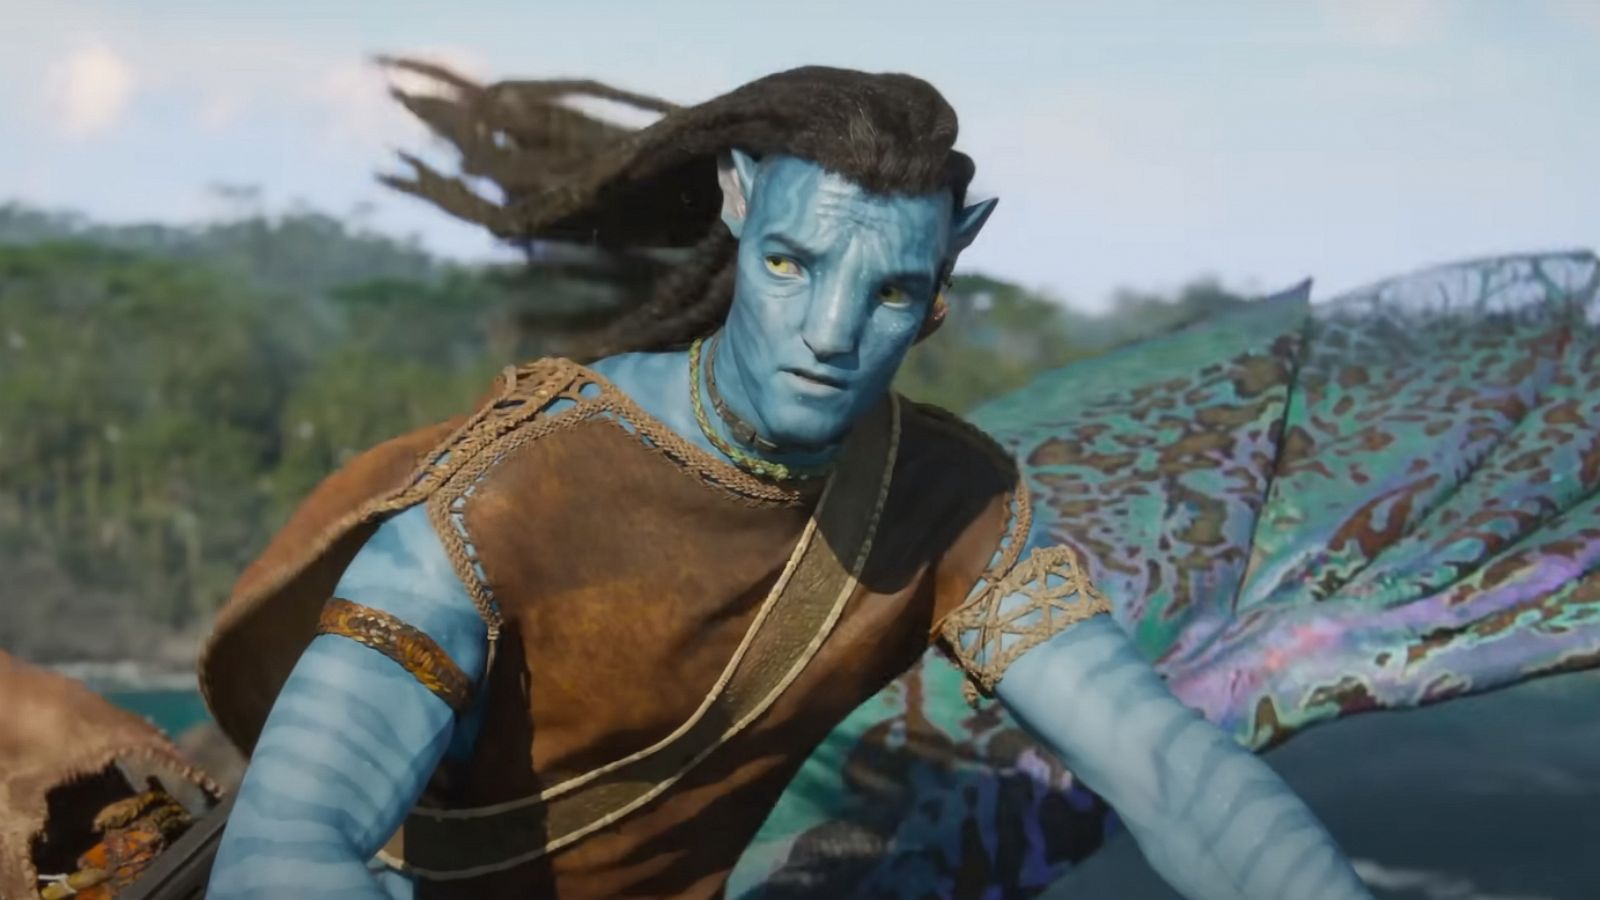 Doanh thu toàn cầu của Avatar 2 vượt 211 tỷ USD